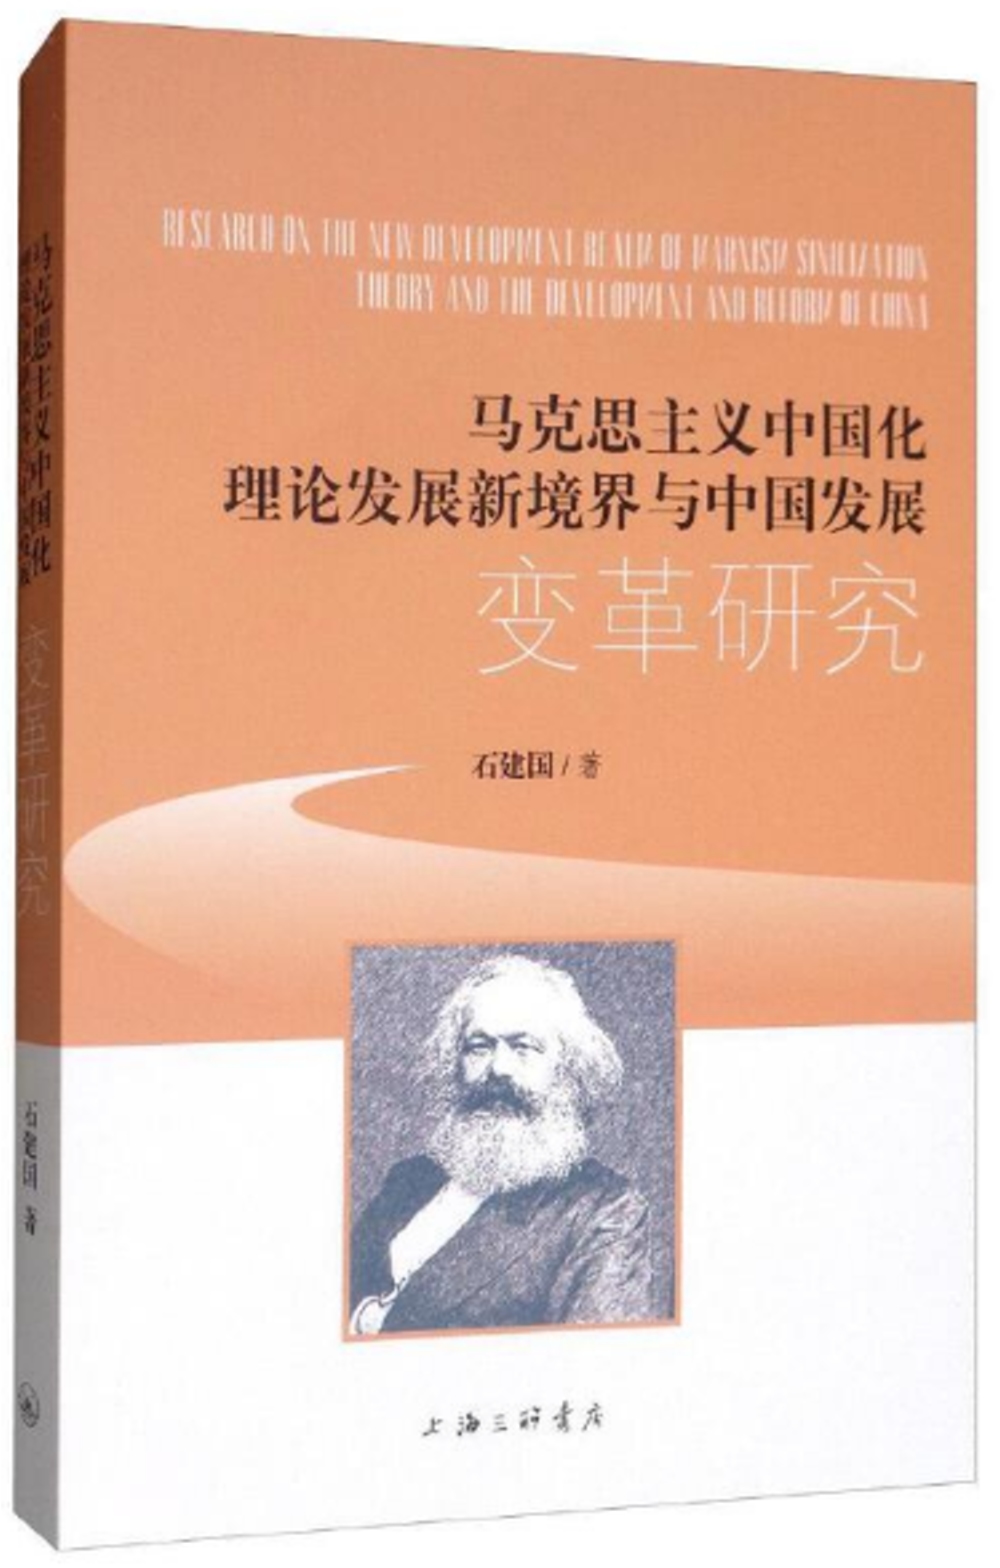 馬克思主義中國化理論發展新境界與中國發展變革研究